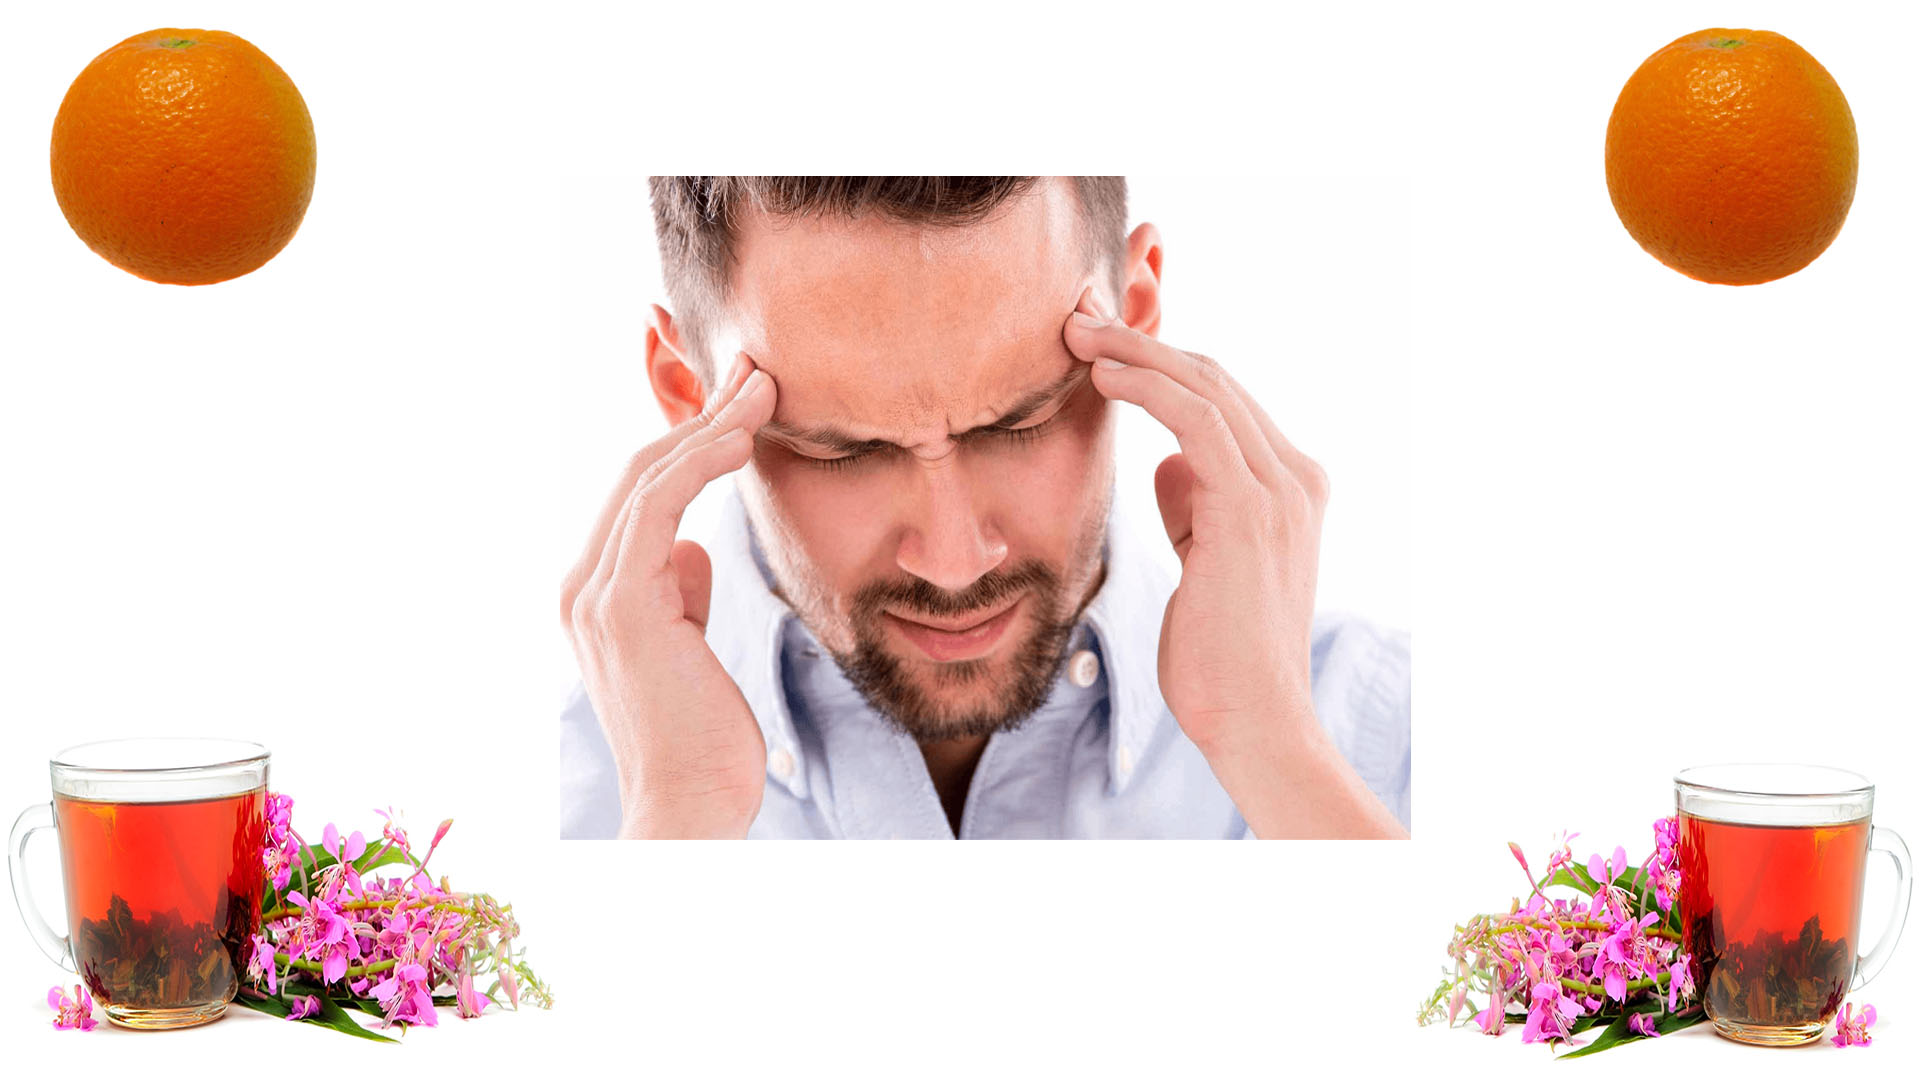 Сильные головные боли, Что делать, какие меры предпринять для устранения